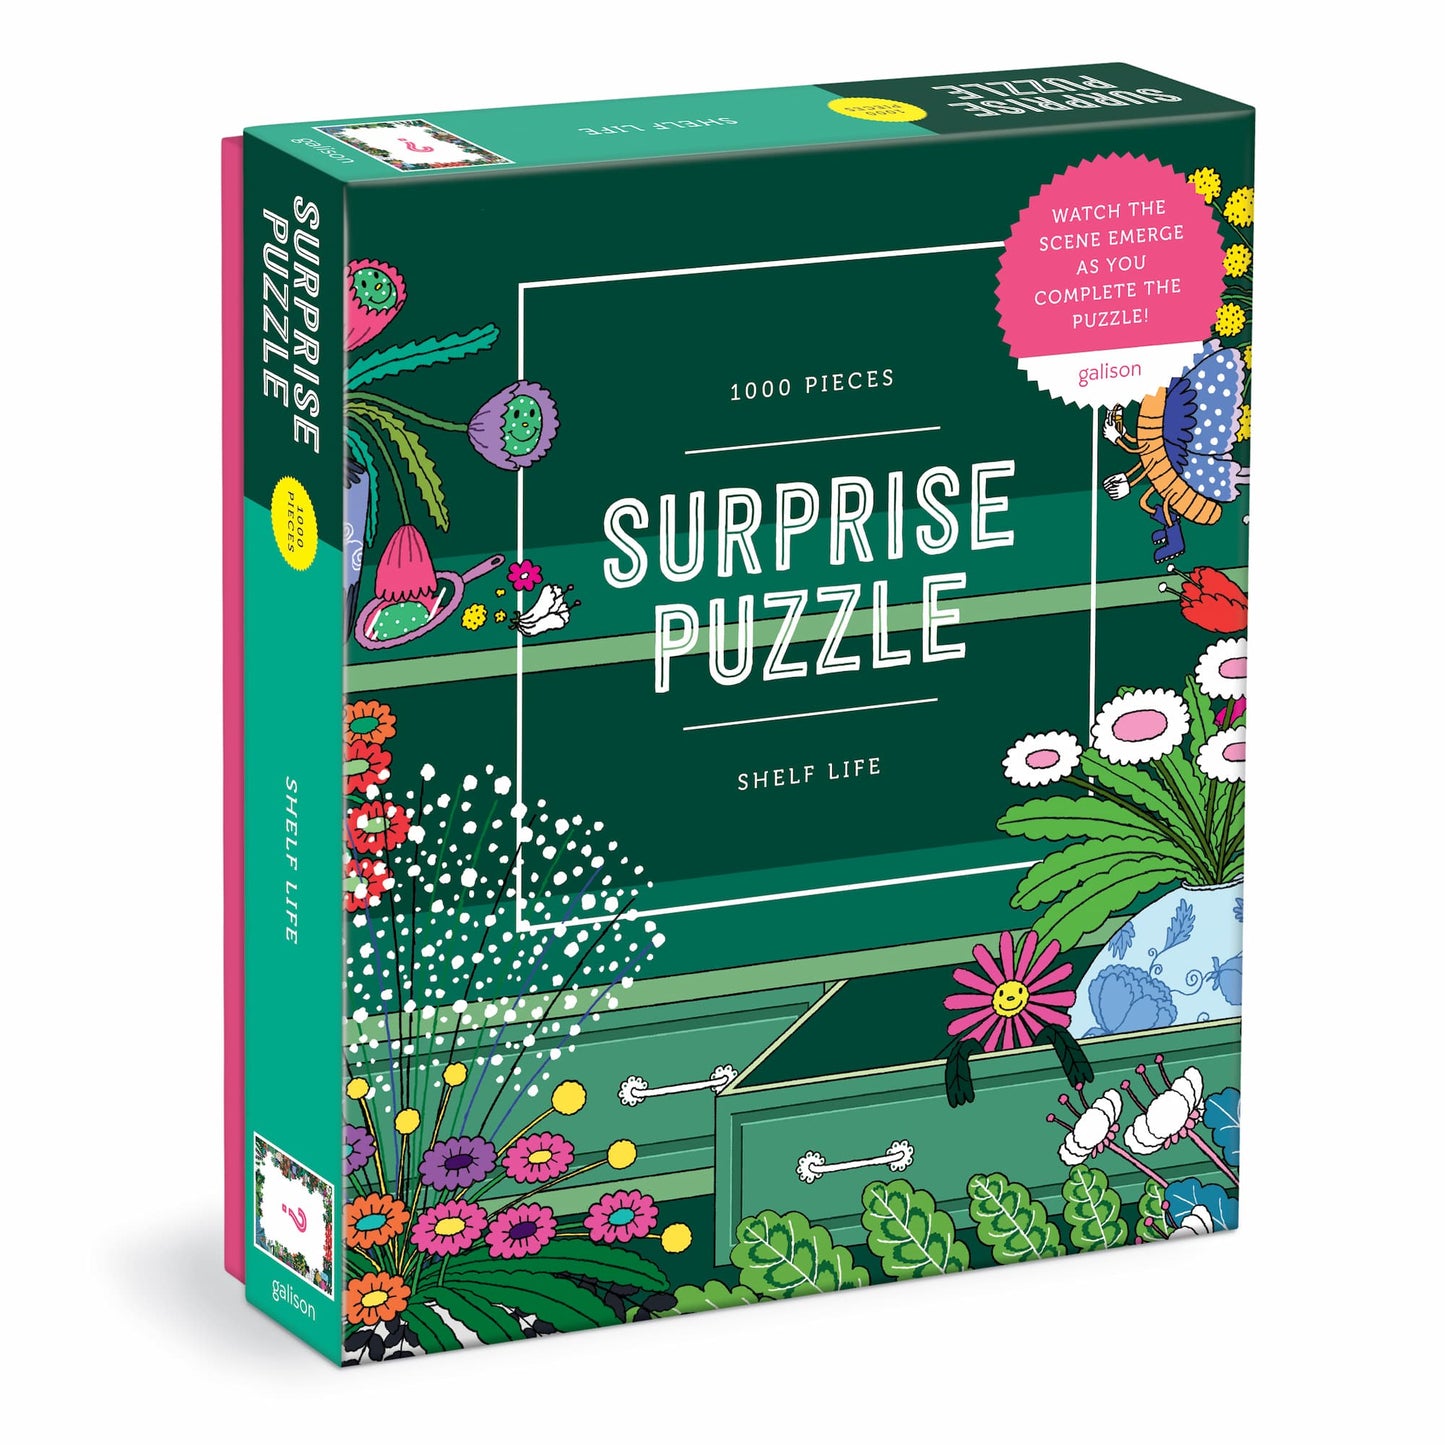 Galison 1000 Piece Shelf Life Surprise Puzzle